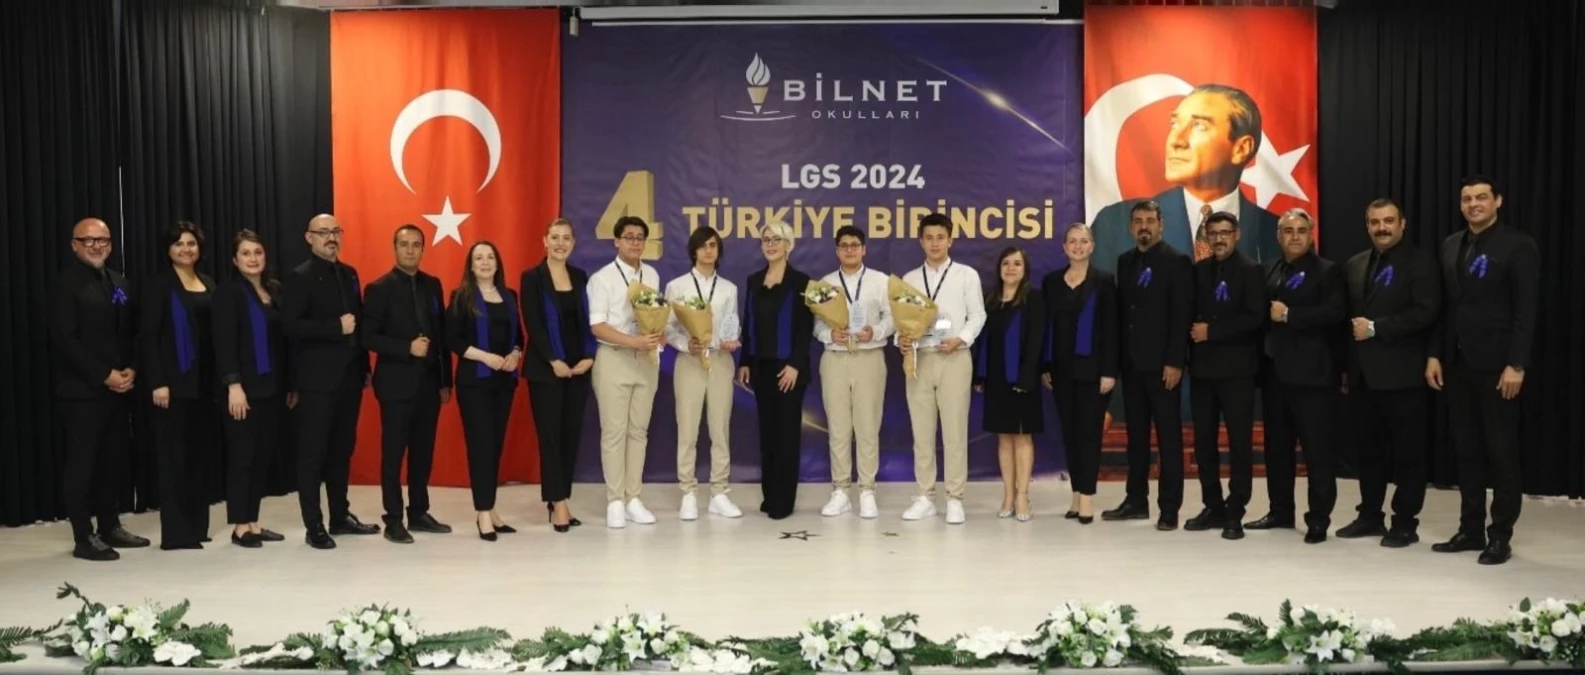 Bilnet Okulları Öğrencileri LGS’de Türkiye Birincisi Oldu